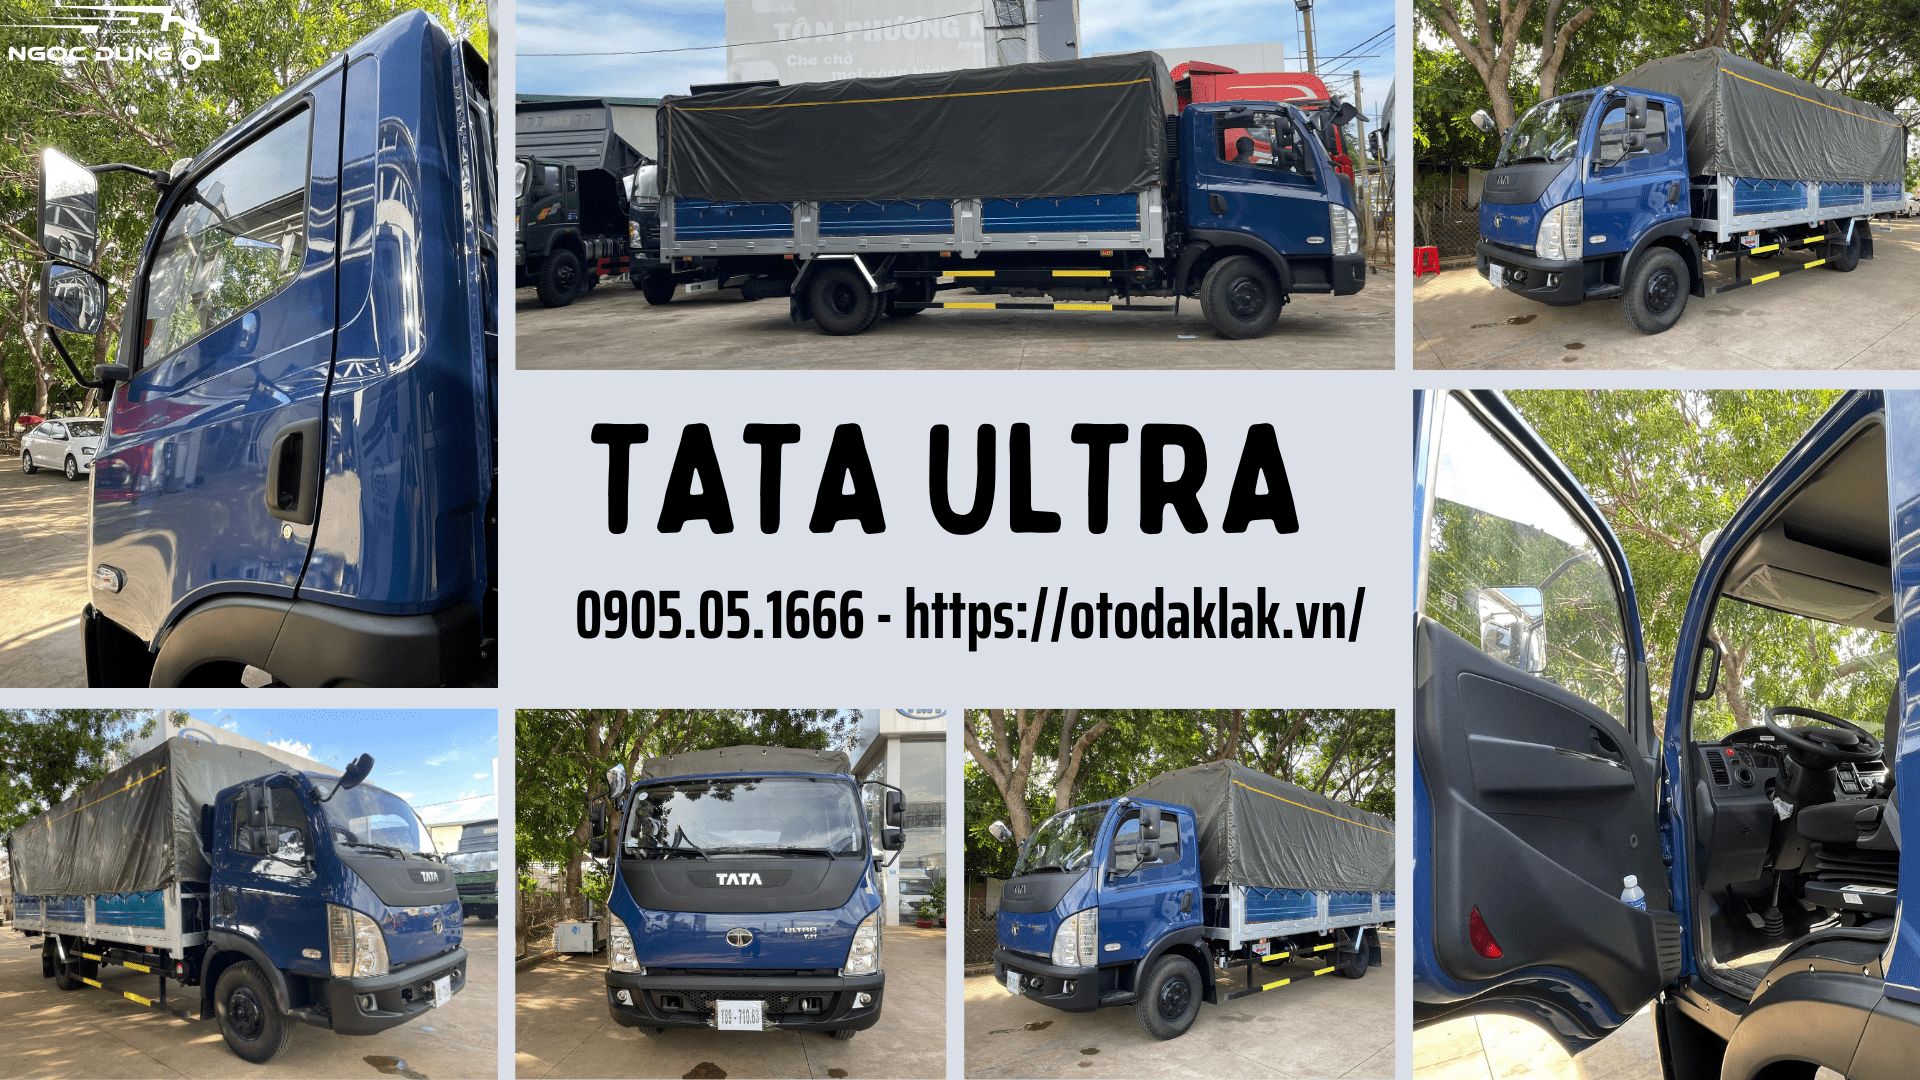 TATA ULTRA T11